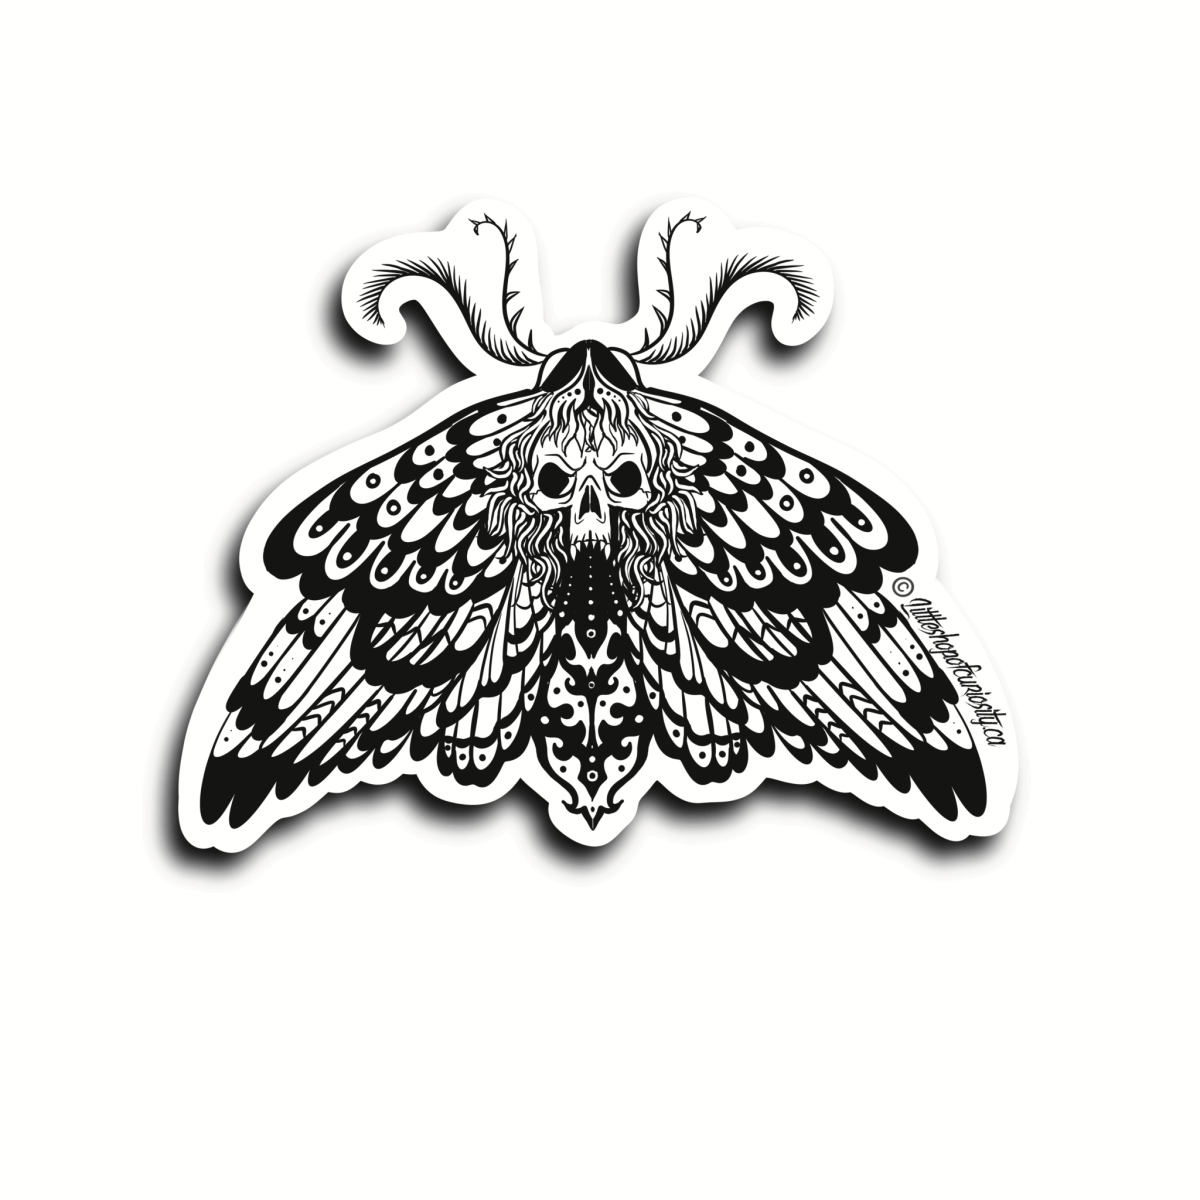 Death's-head Hawk Moth Black & White Sticker - Black & White Sticker - Little Shop of Curiosity